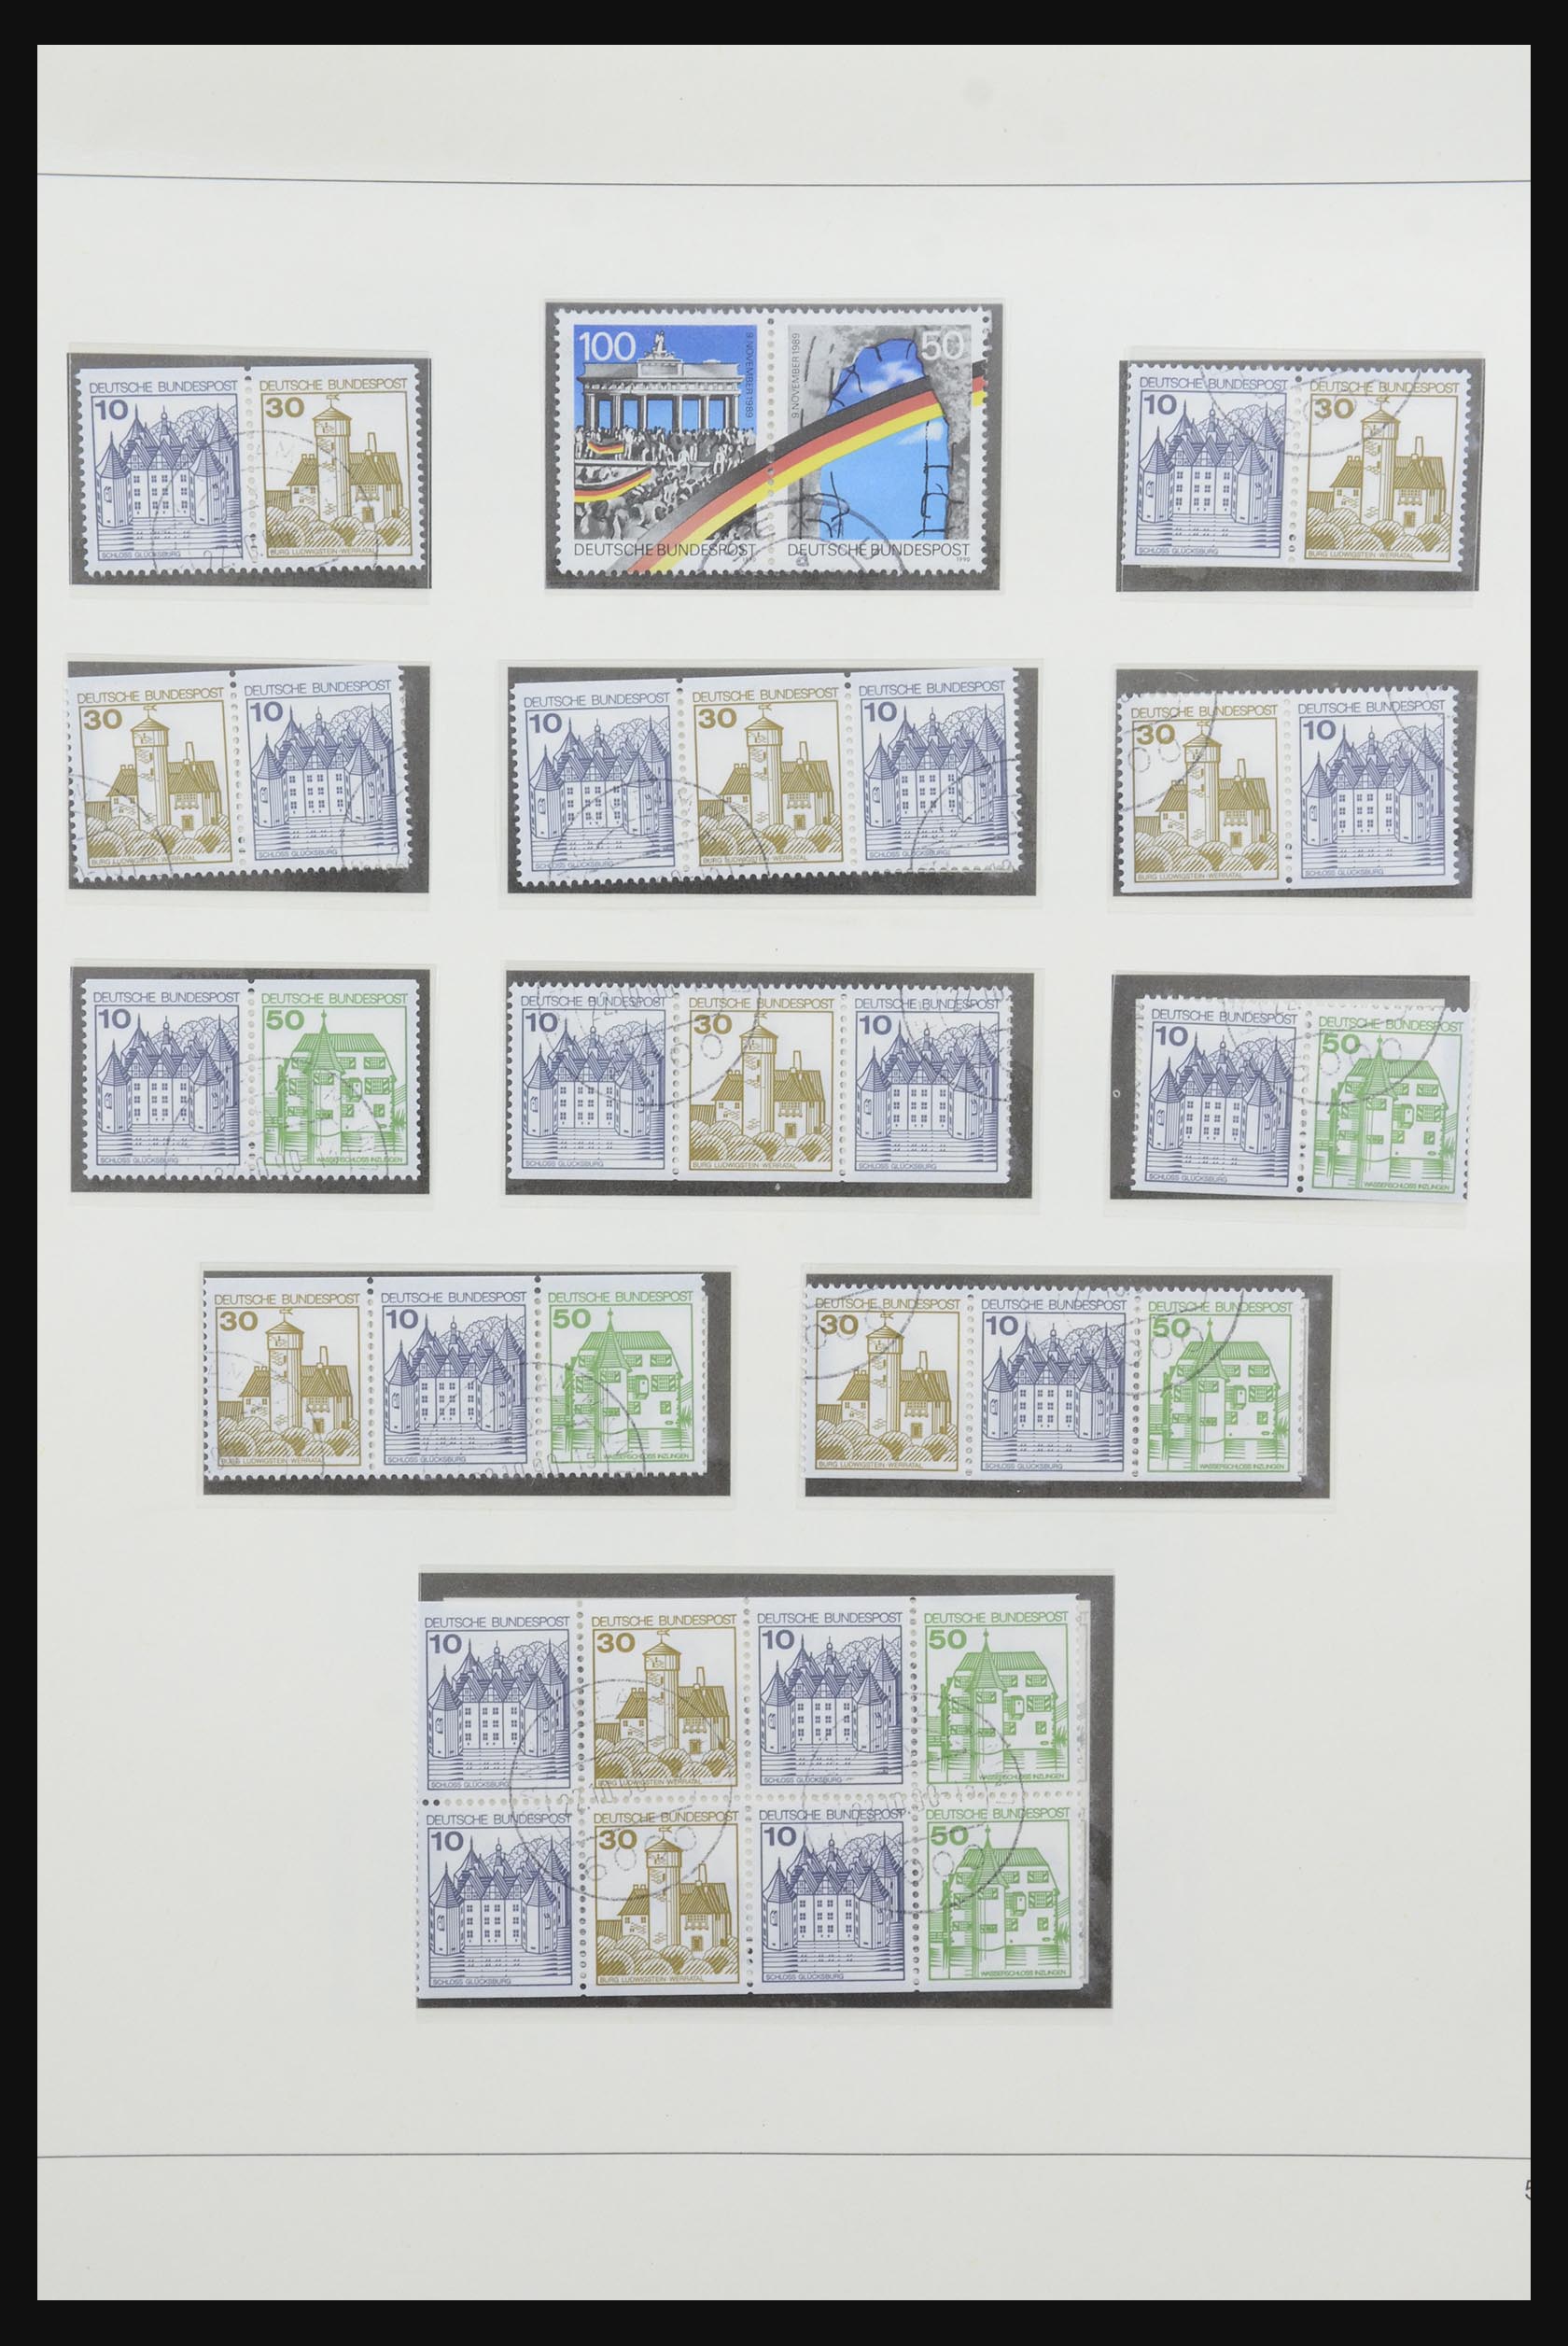 31842 073 - 31842 Bundespost combinaties 1951-2003.